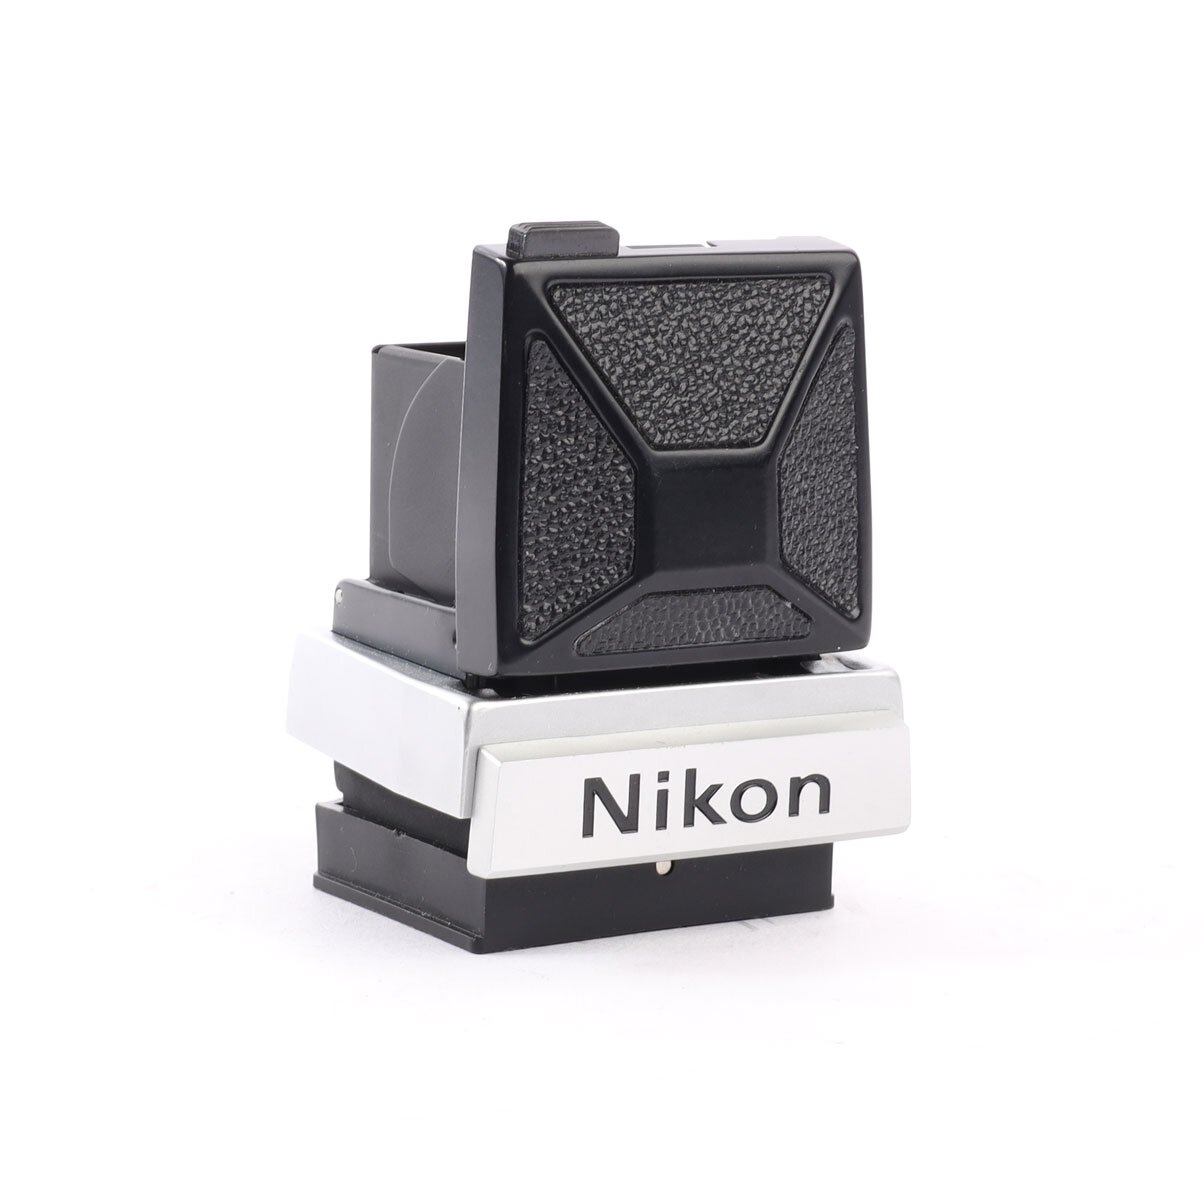 Nikon DW-1